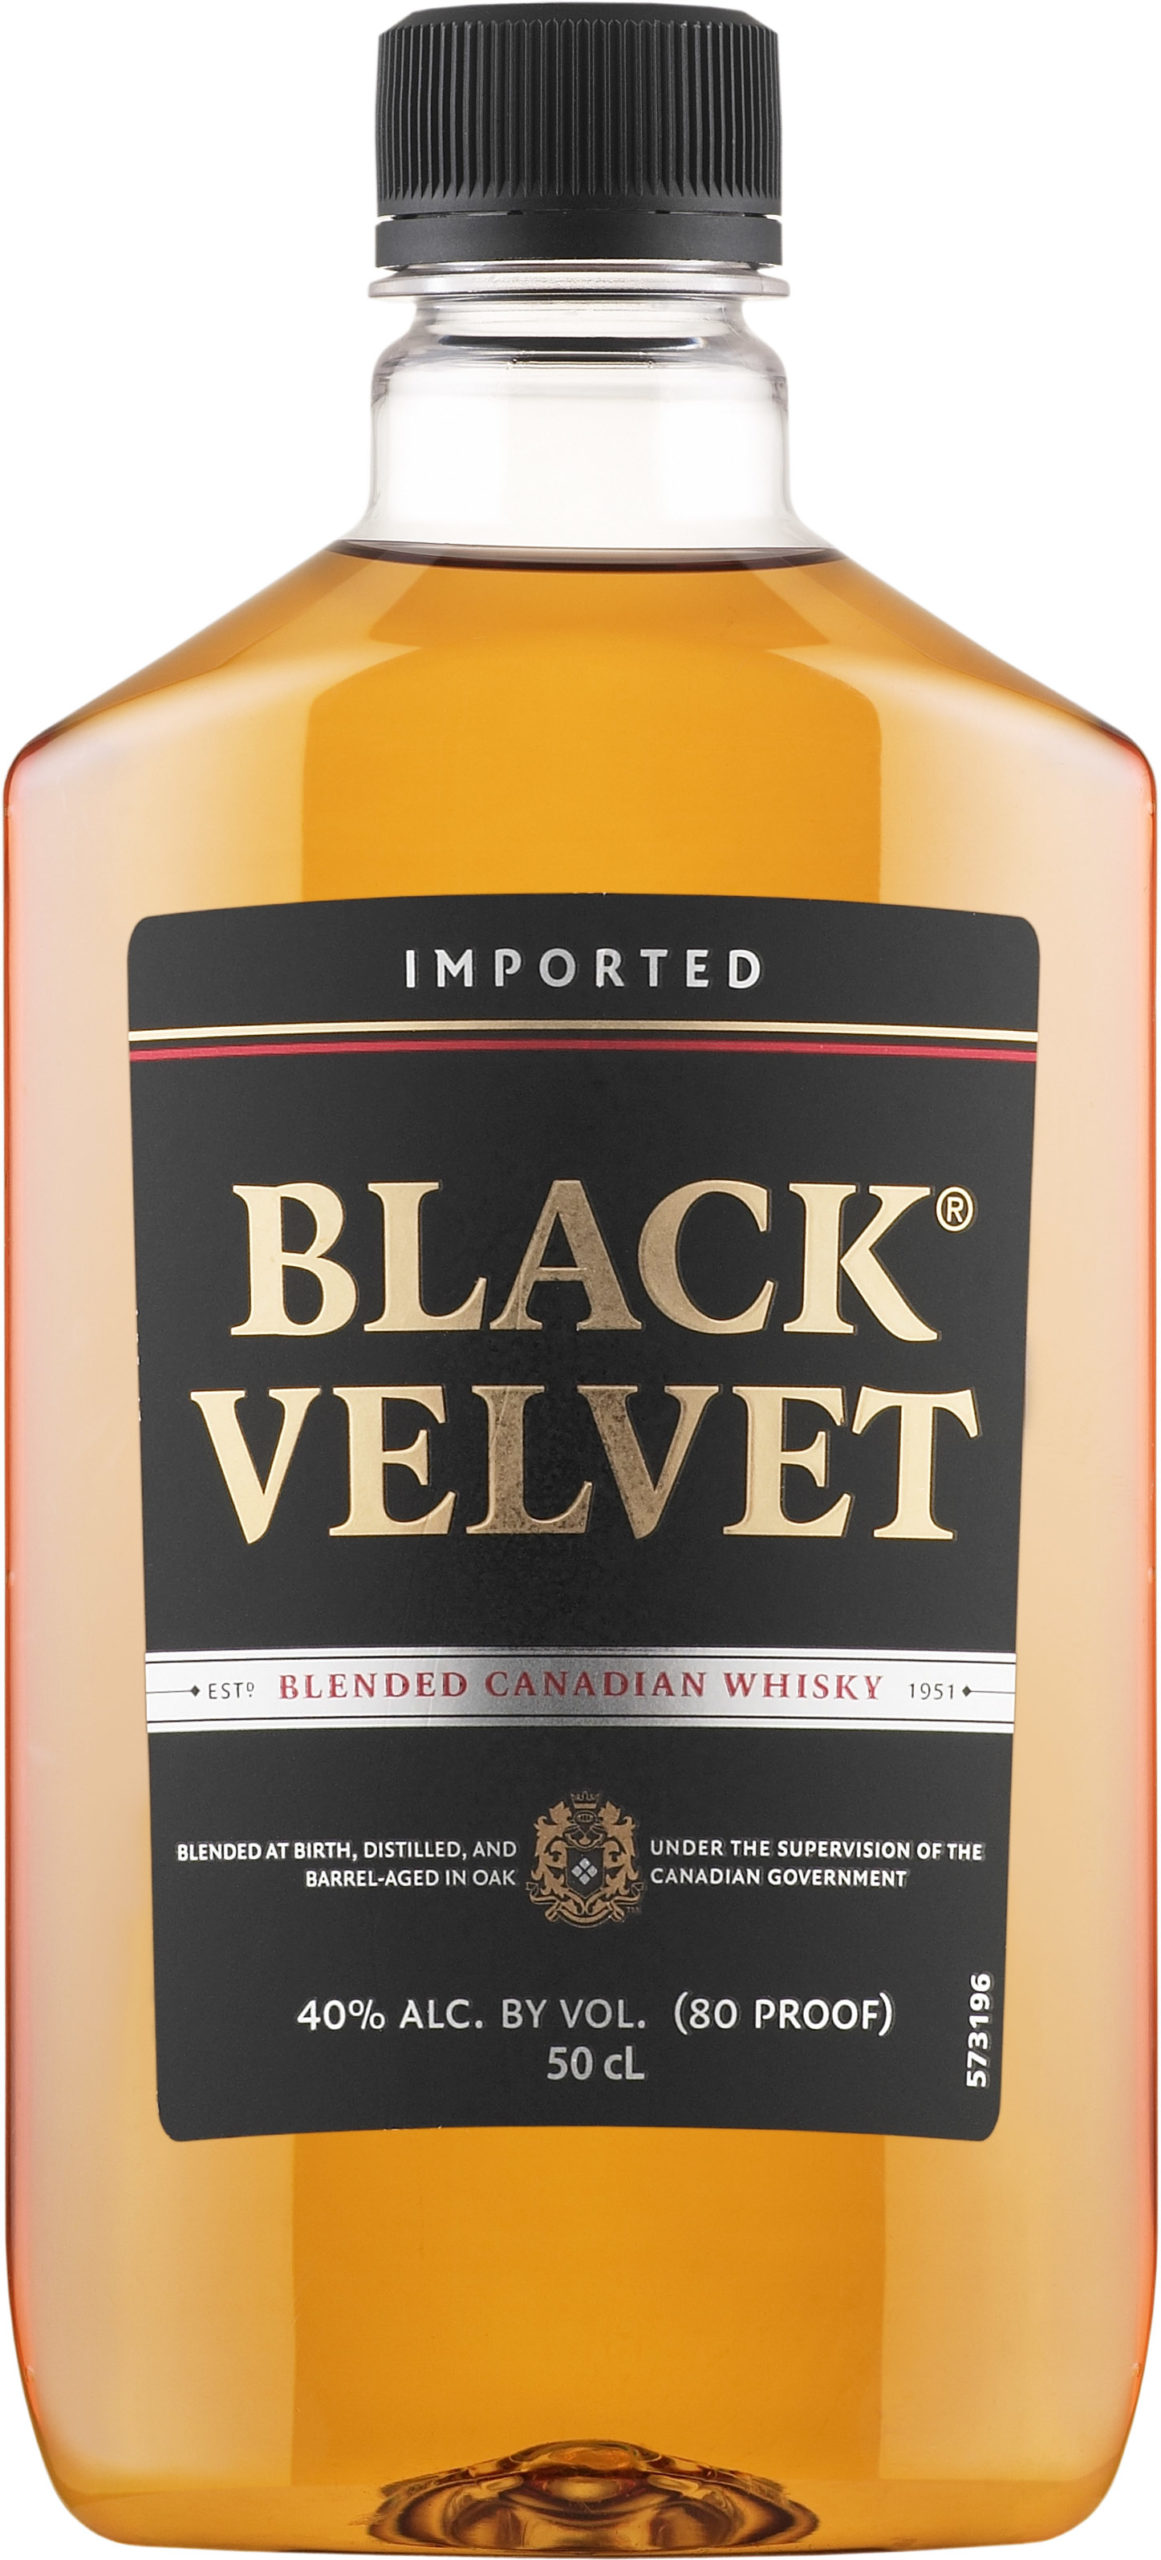 Black Velvet Blended Canadian Whisky plastic bottle